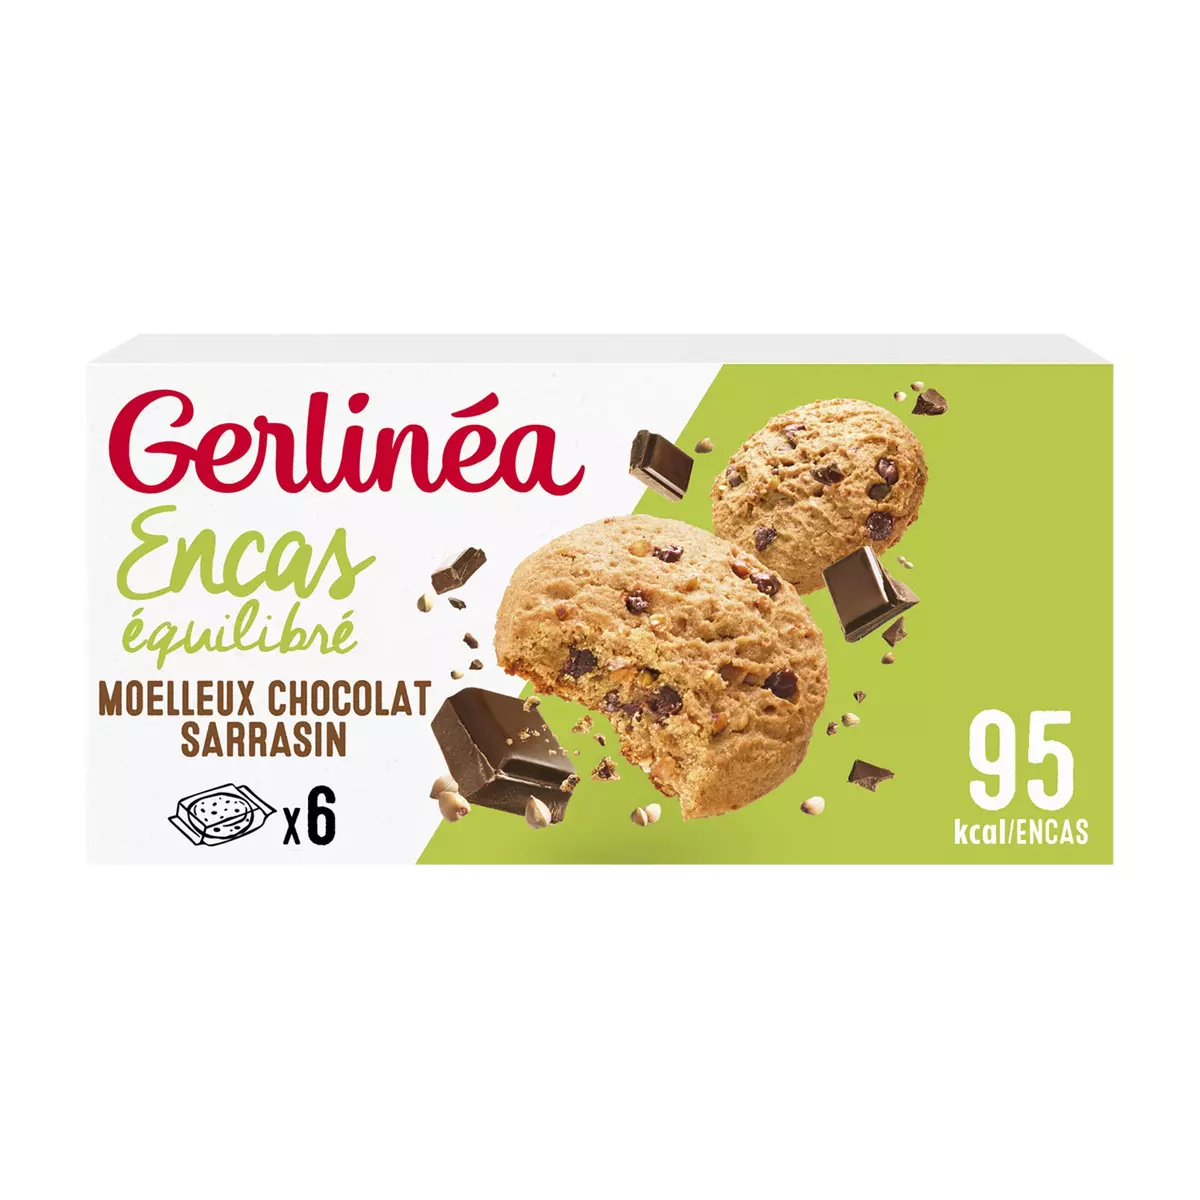 GERLINEA Biscuits moelleux au sarrasin et pépites de chocolat 6 sachets 138g